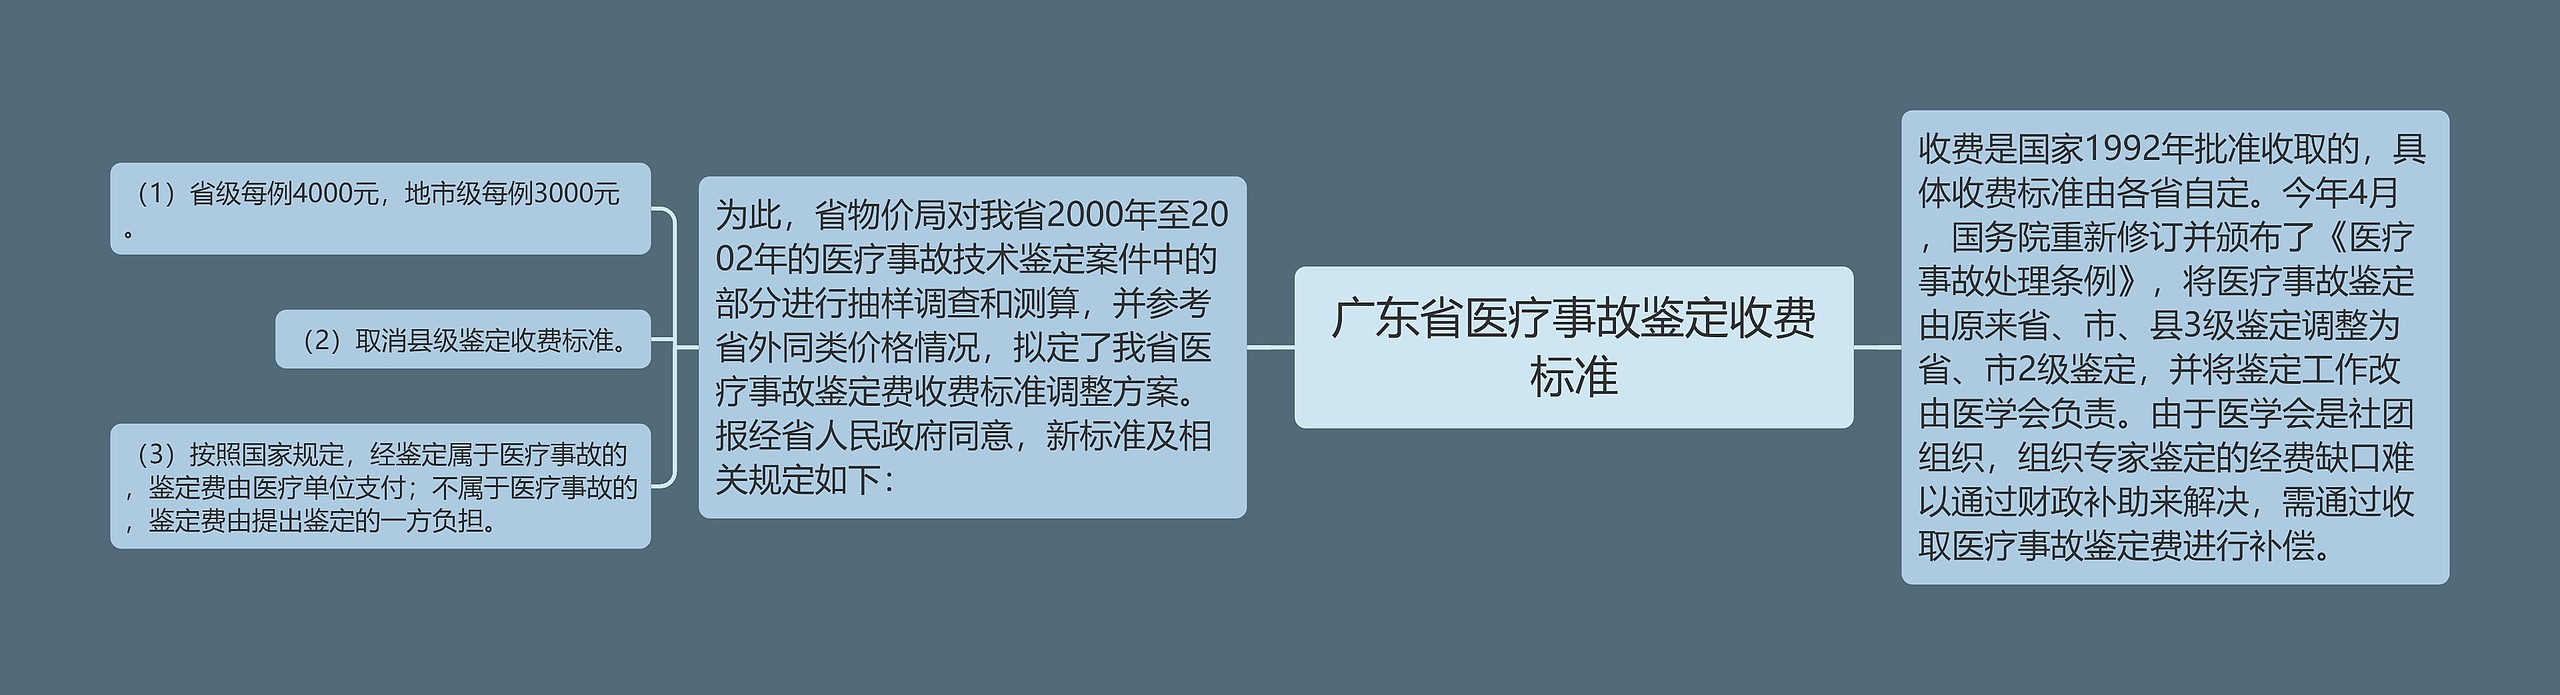 广东省医疗事故鉴定收费标准